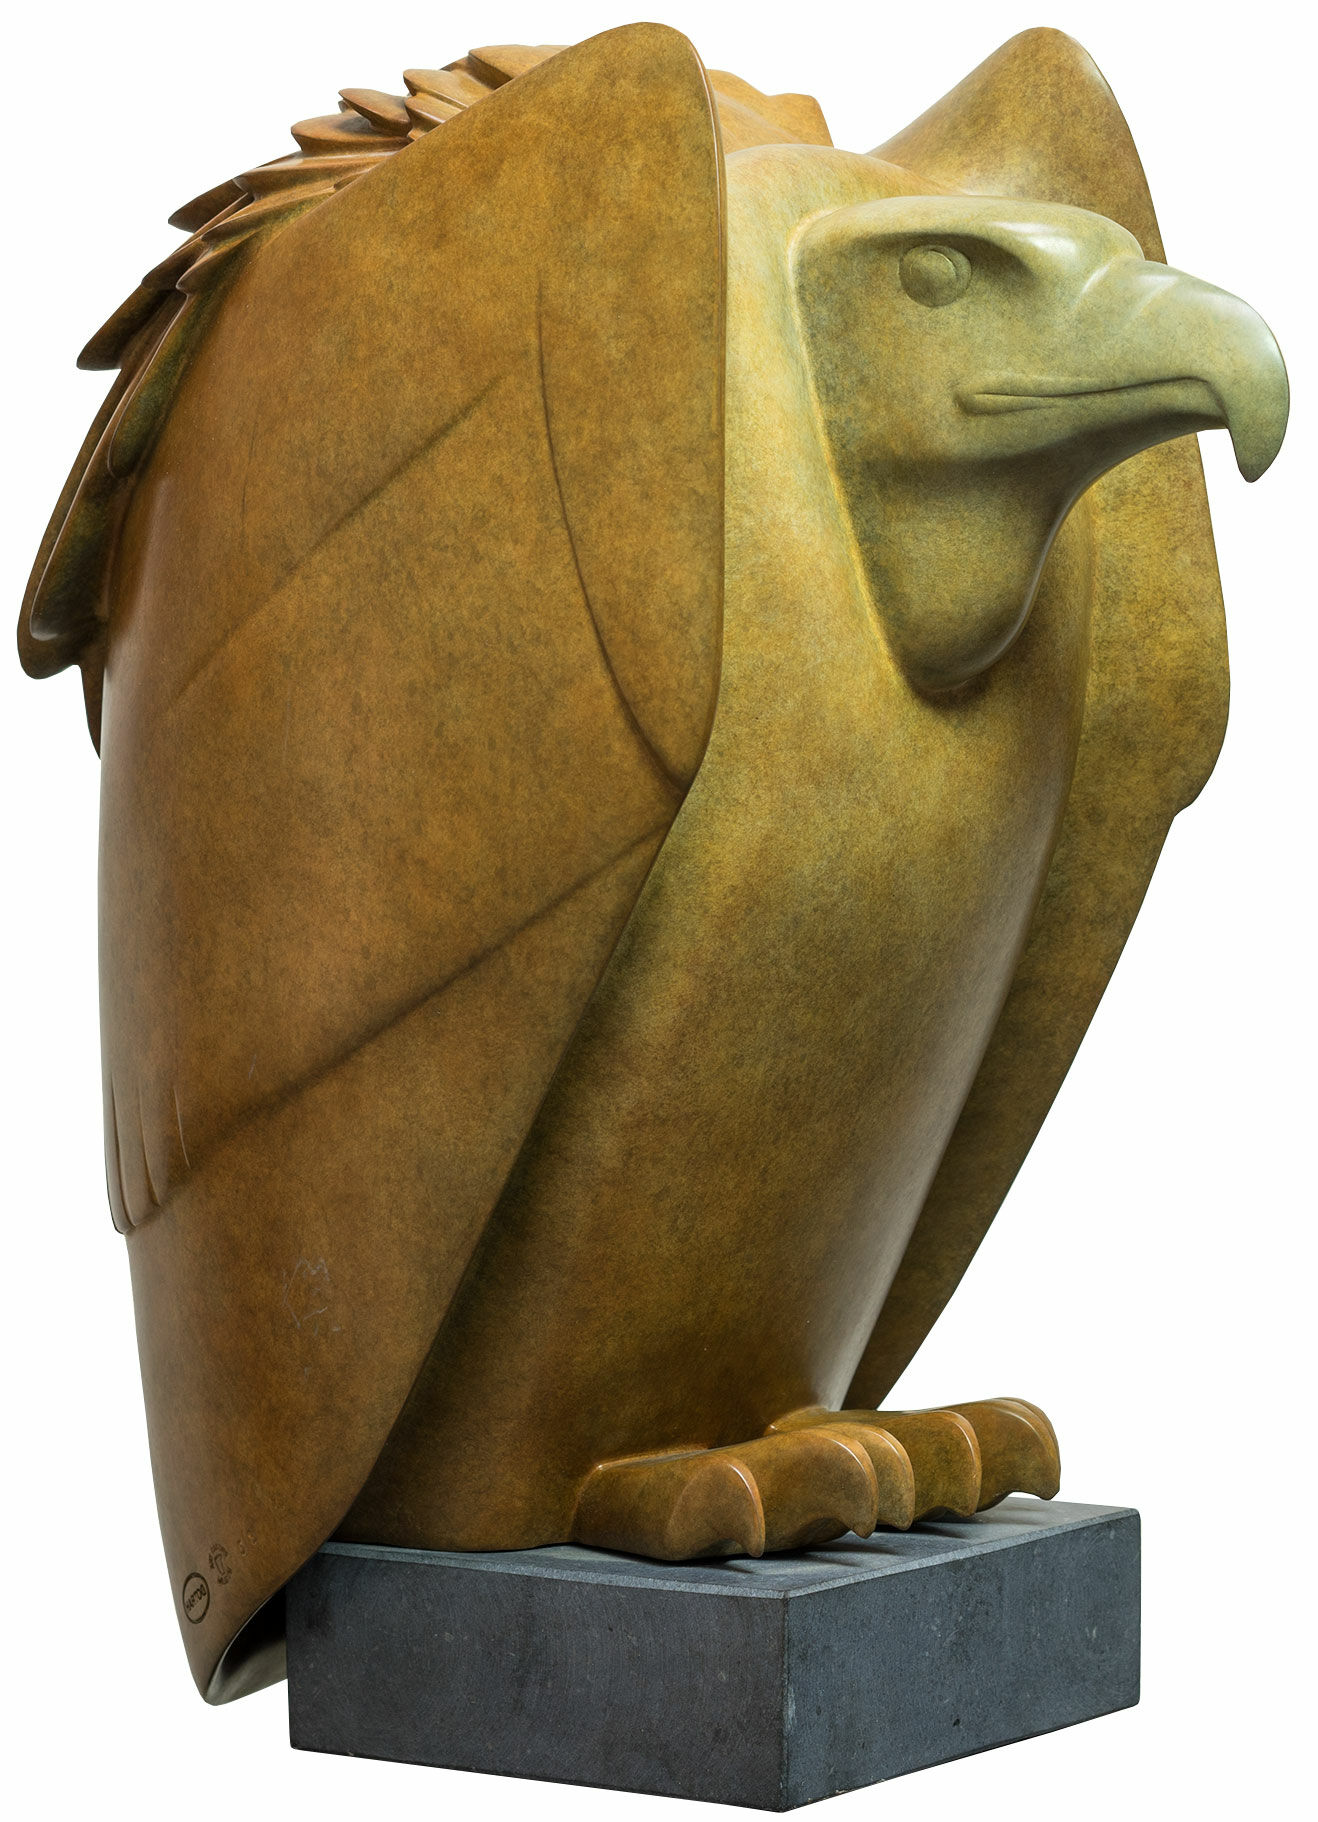 Sculpture "Vulture No. 2", bronze brown/green by Evert den Hartog